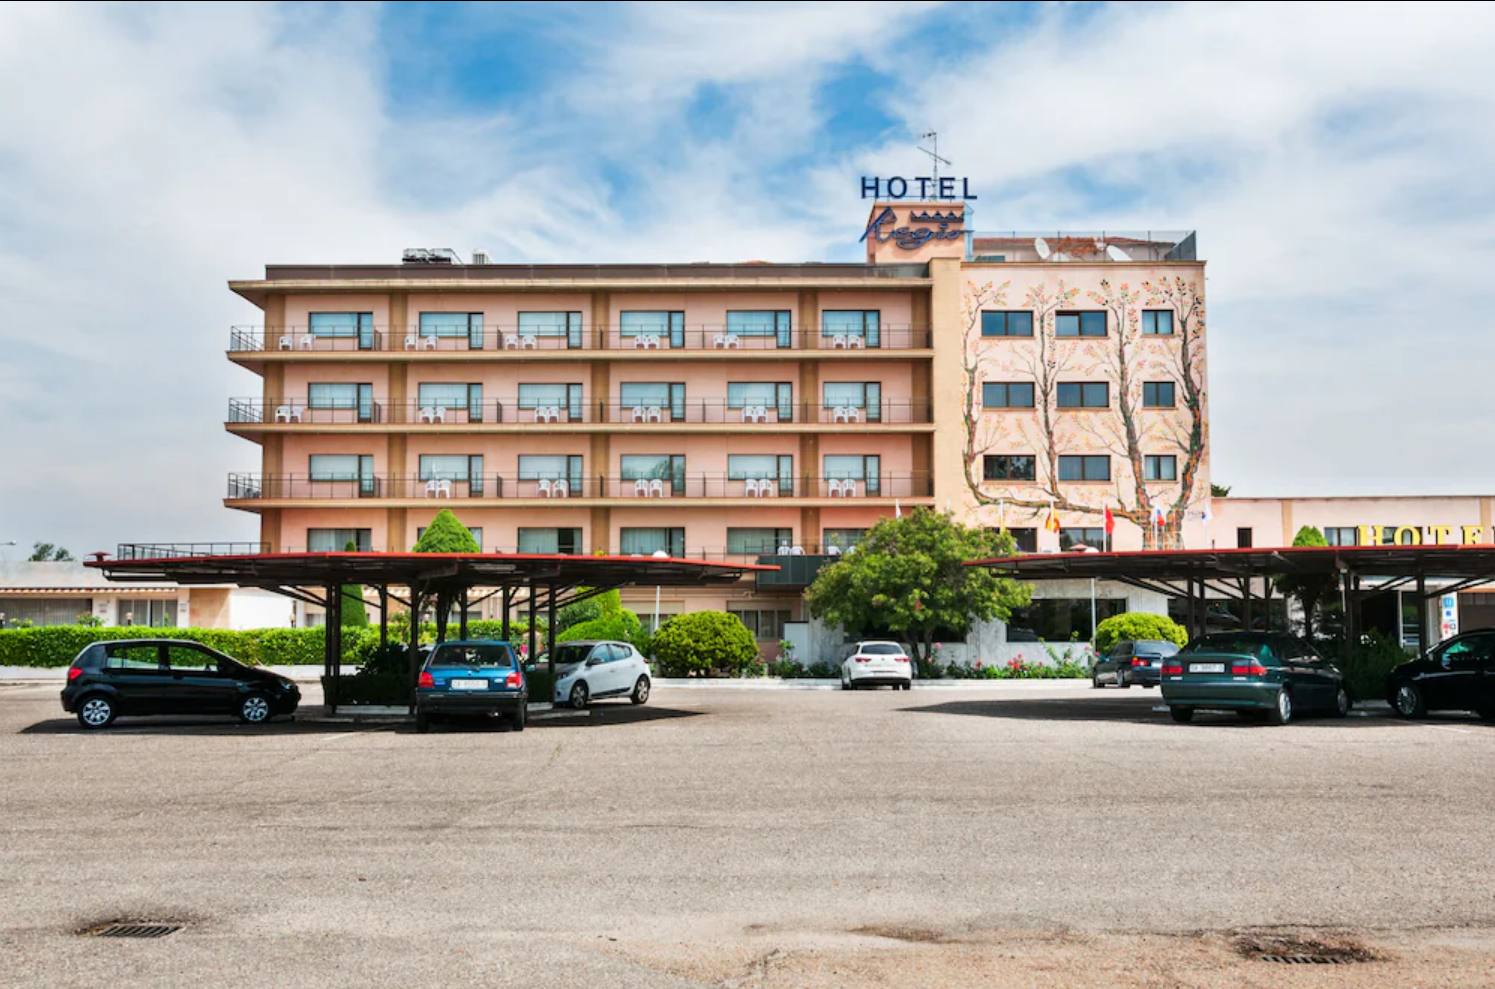 Hotel Regio - Santa Maria de Tormes